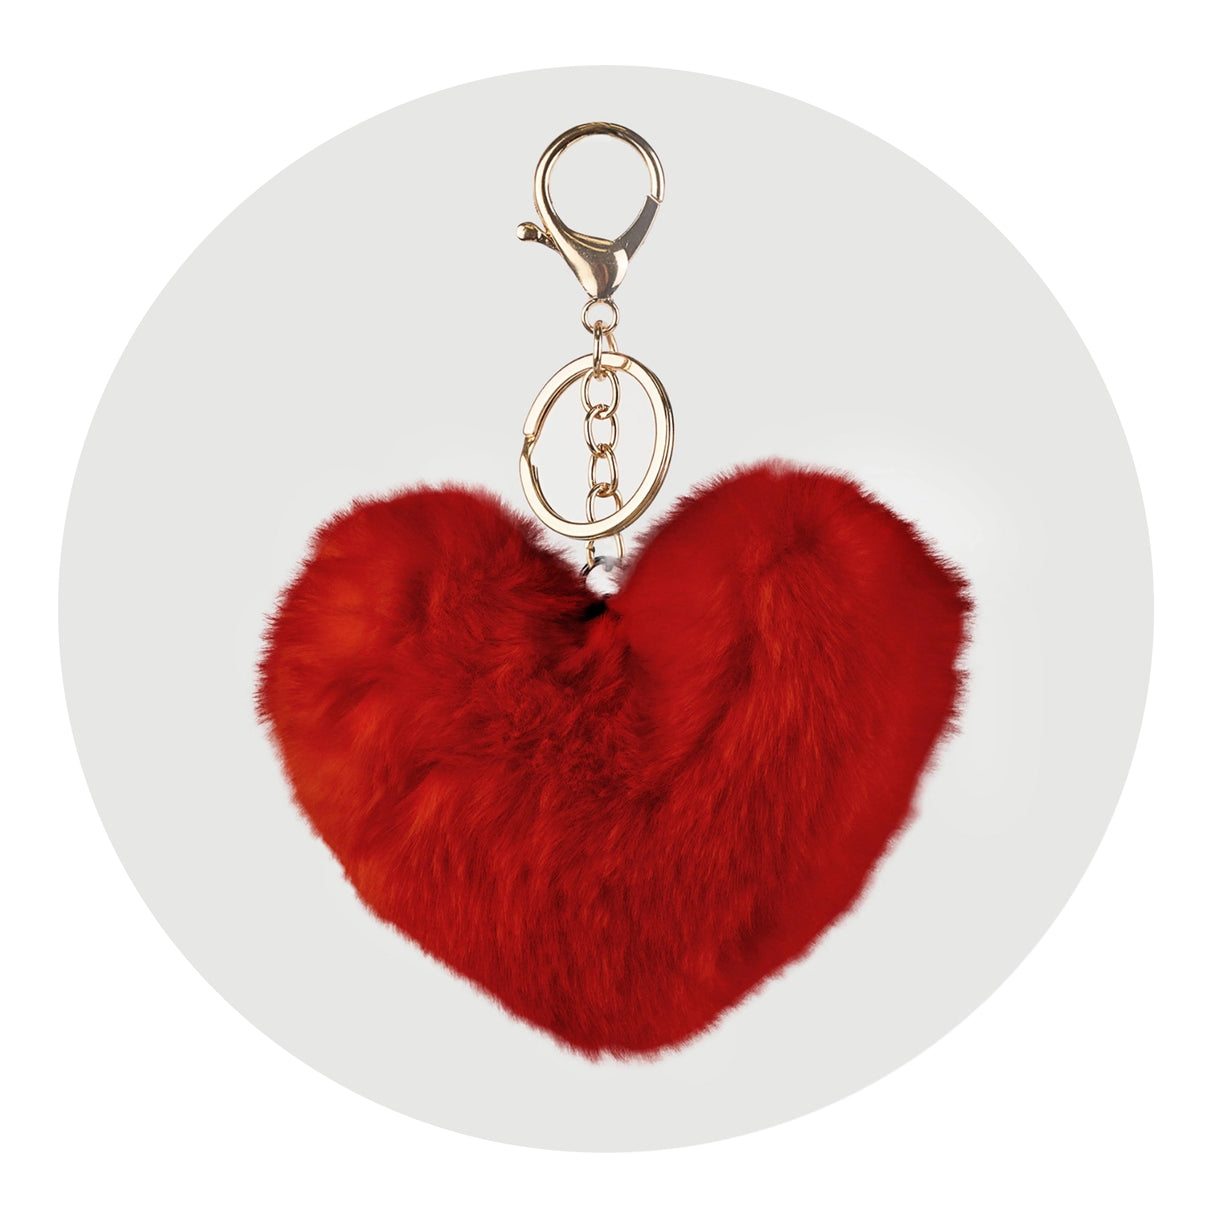 pom pom heart key chain red